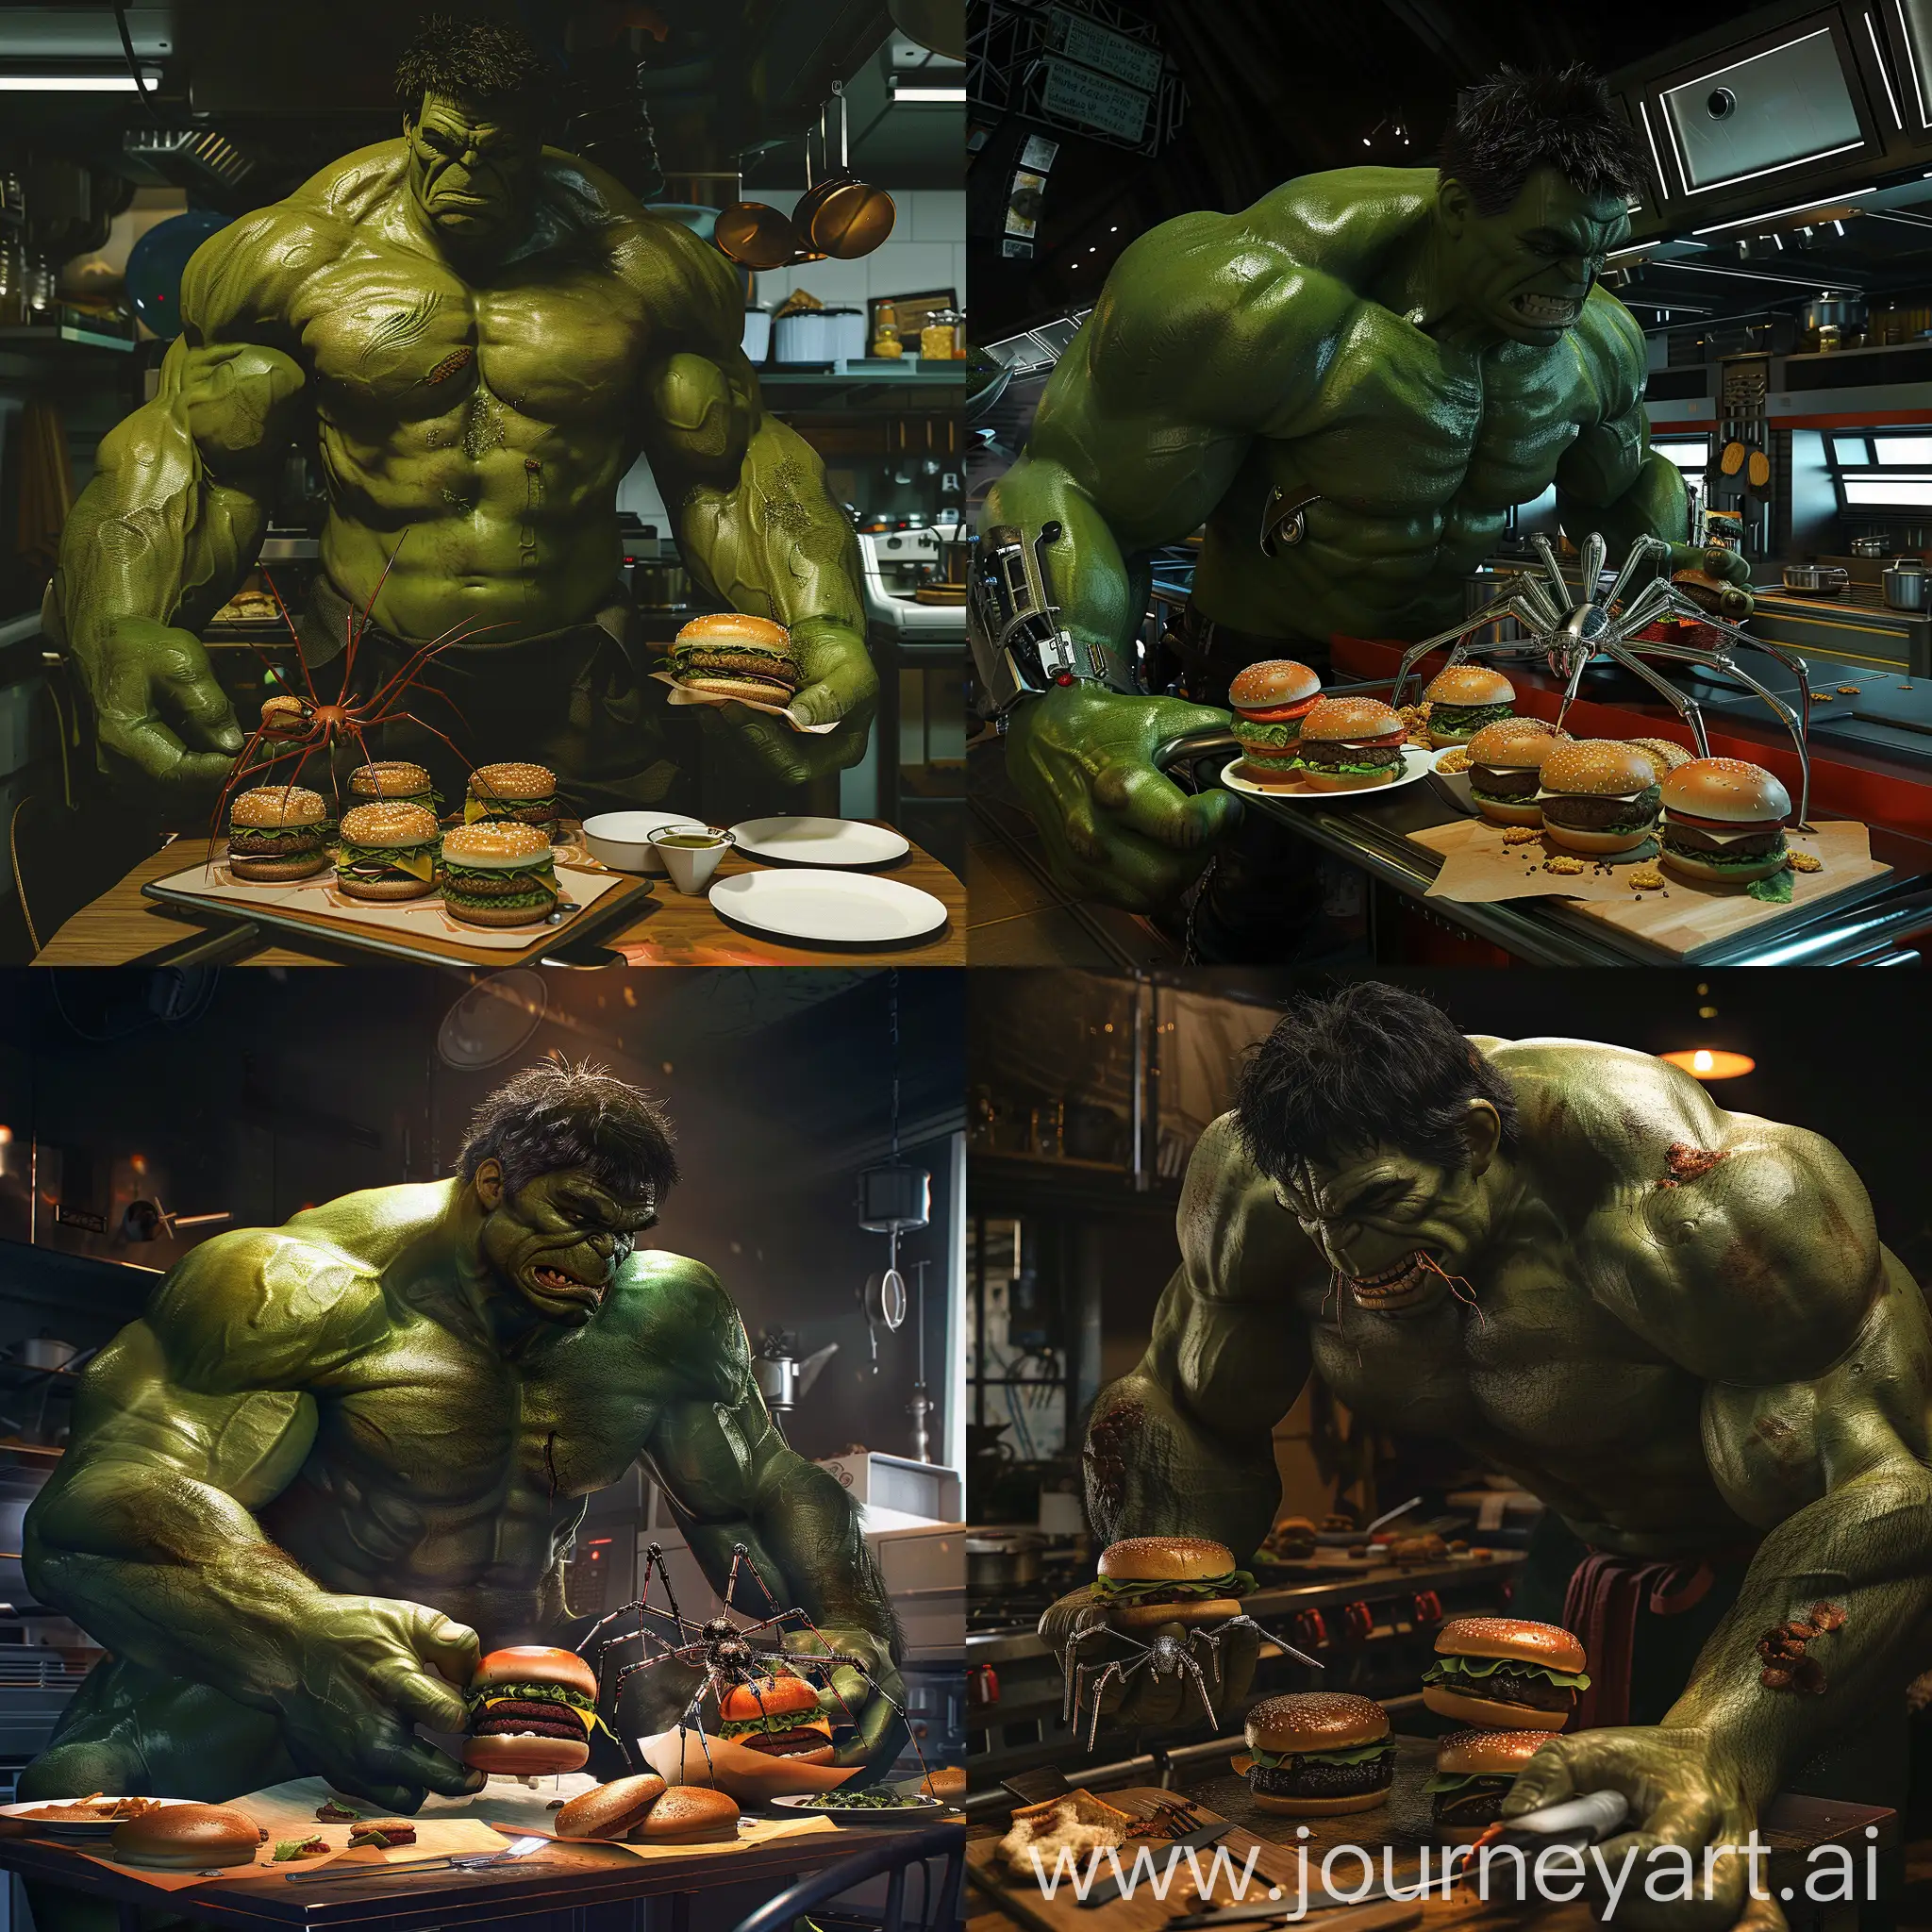 Epic-Hulk-Feasting-on-Hamburgers-in-Futuristic-Kitchen